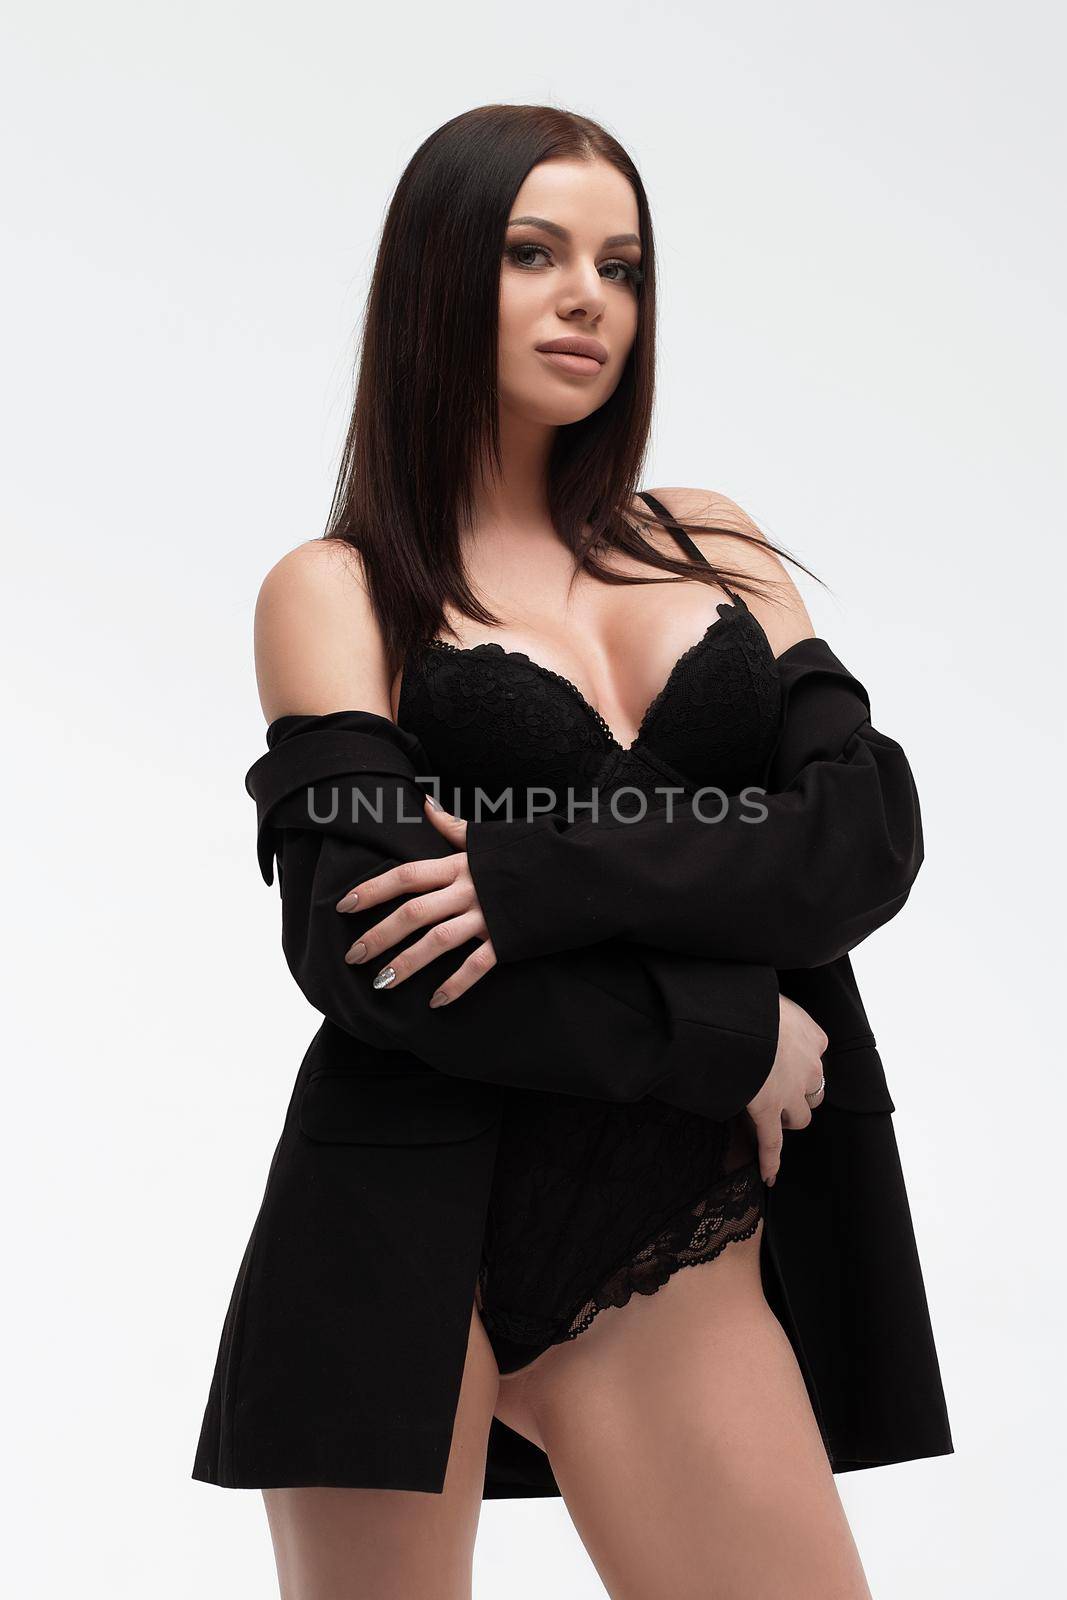 Sensual model in lingerie on light background by 3KStudio